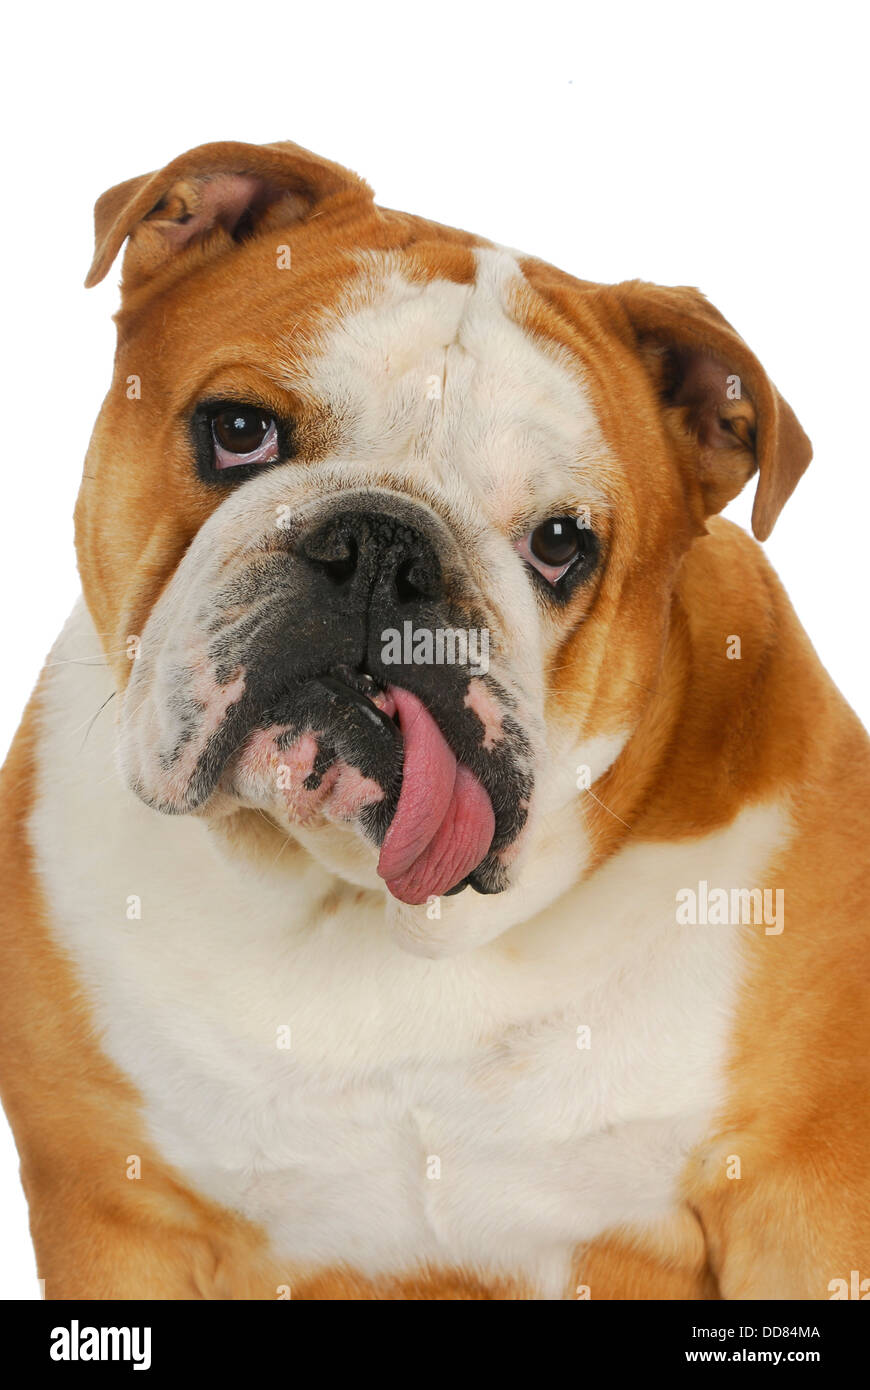 ugly bulldog - english bulldog with tongue sticking out isolated on white background Stock Photo